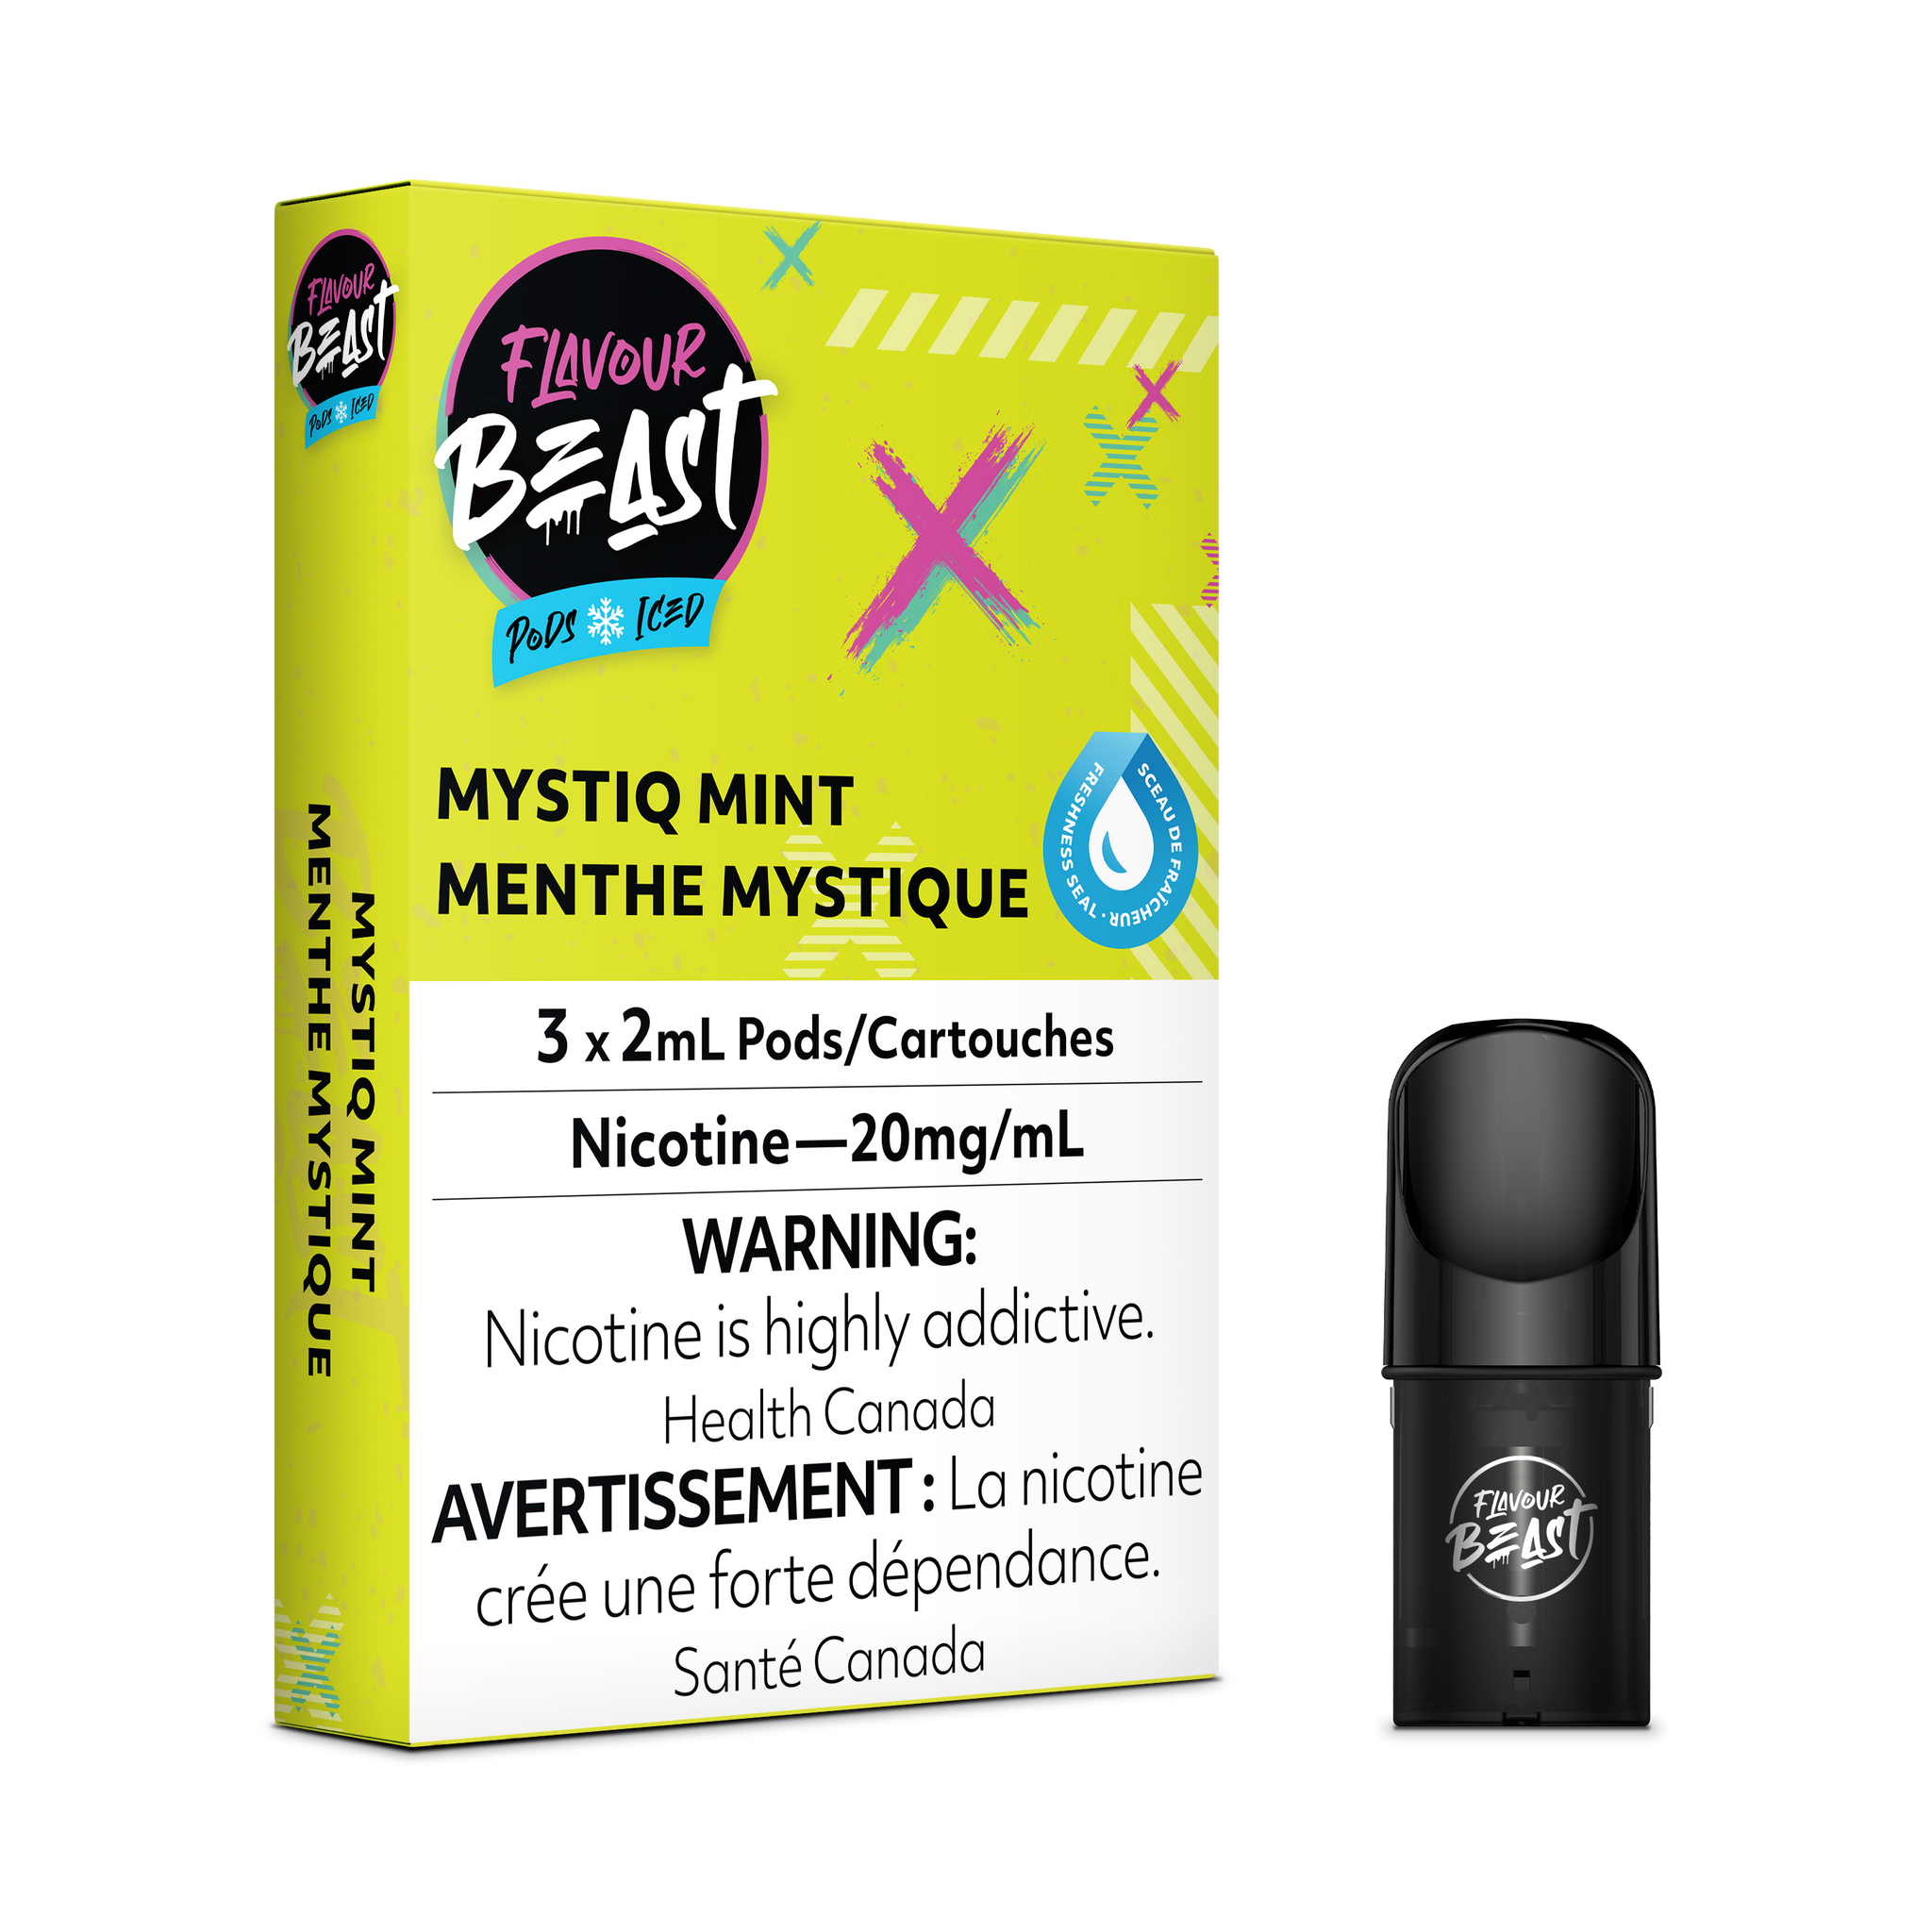 Flavour Beast Pod Pack - Mystiq Mint Iced